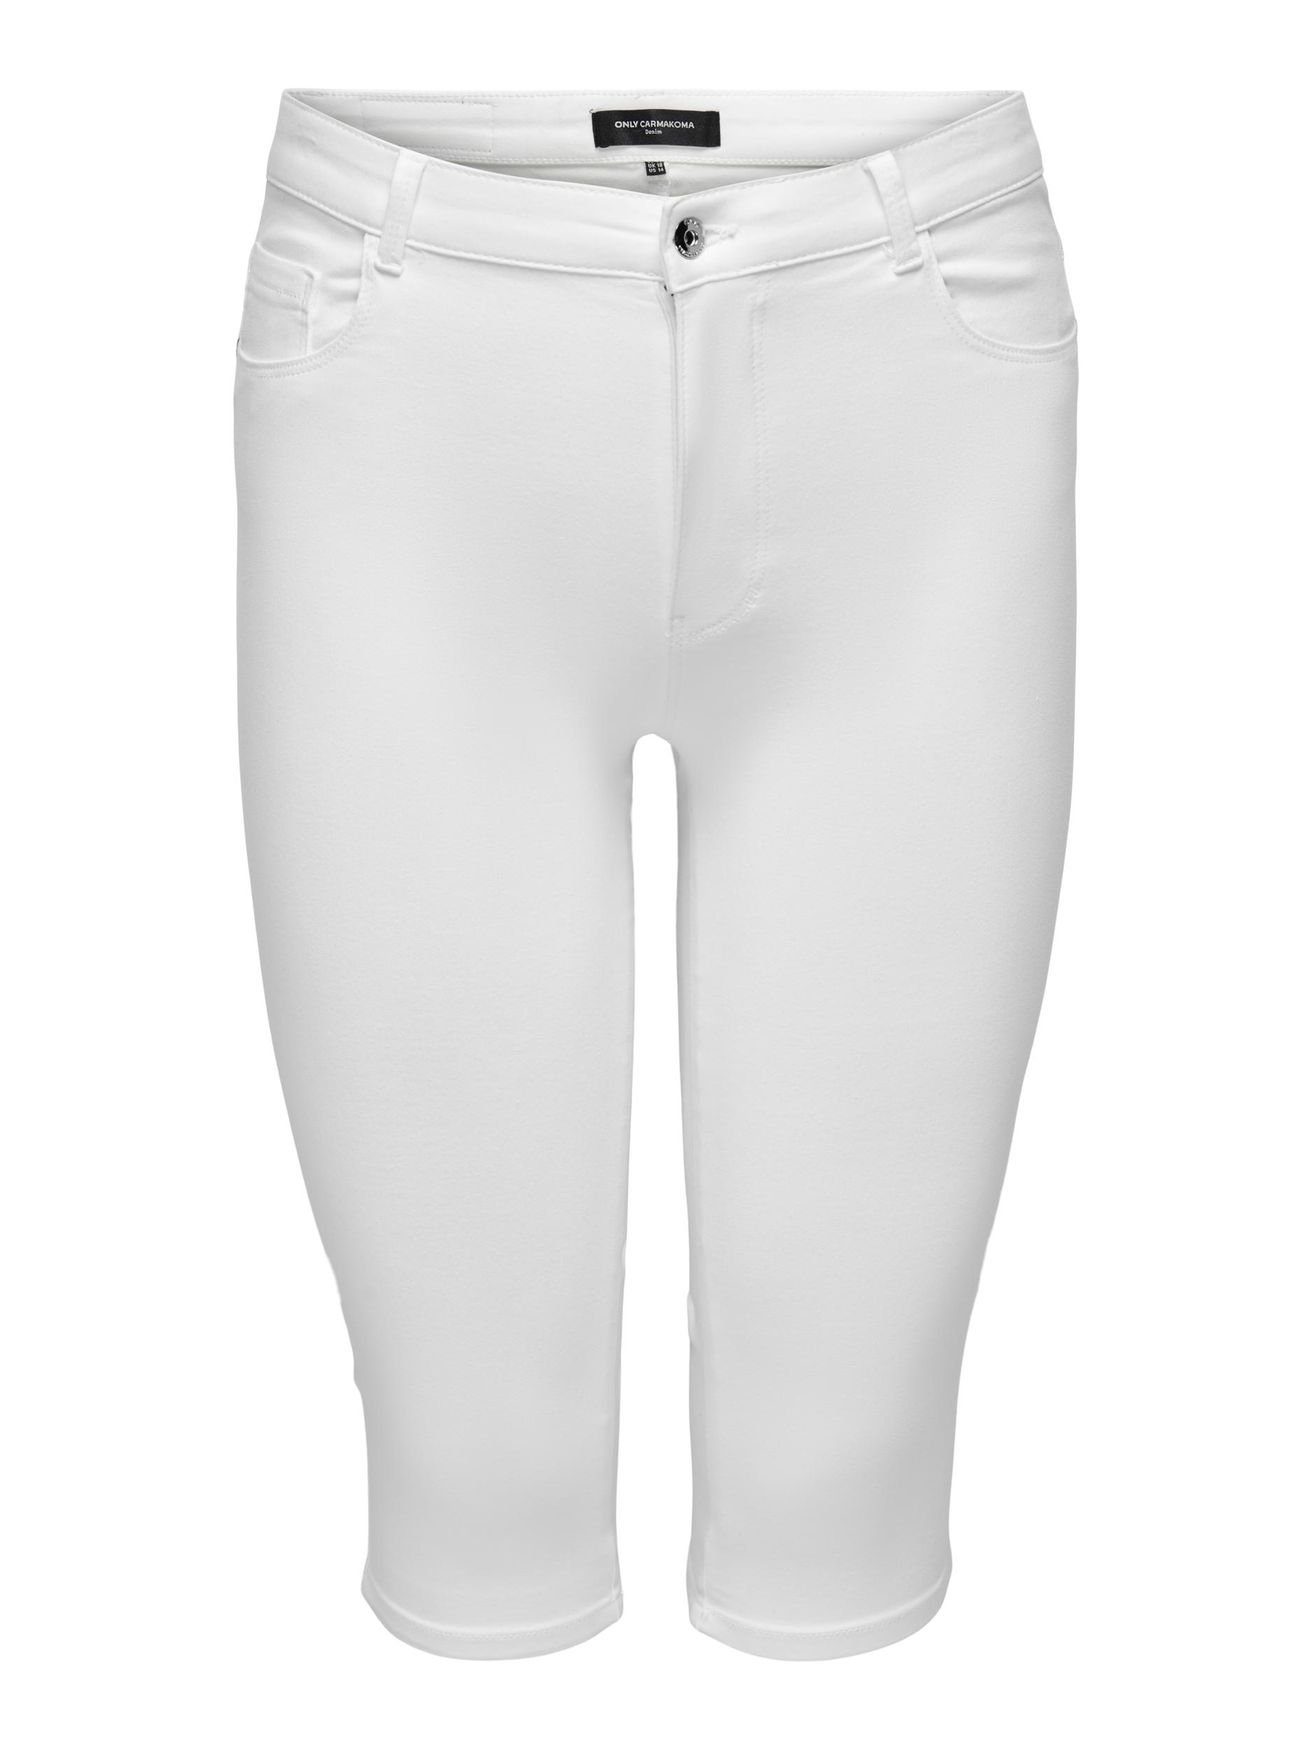 ONLY CARMAKOMA Caprihose Capri Jeans 4899 in Stretch Weiß CARAUGUSTA Hose Denim Shorts 3/4